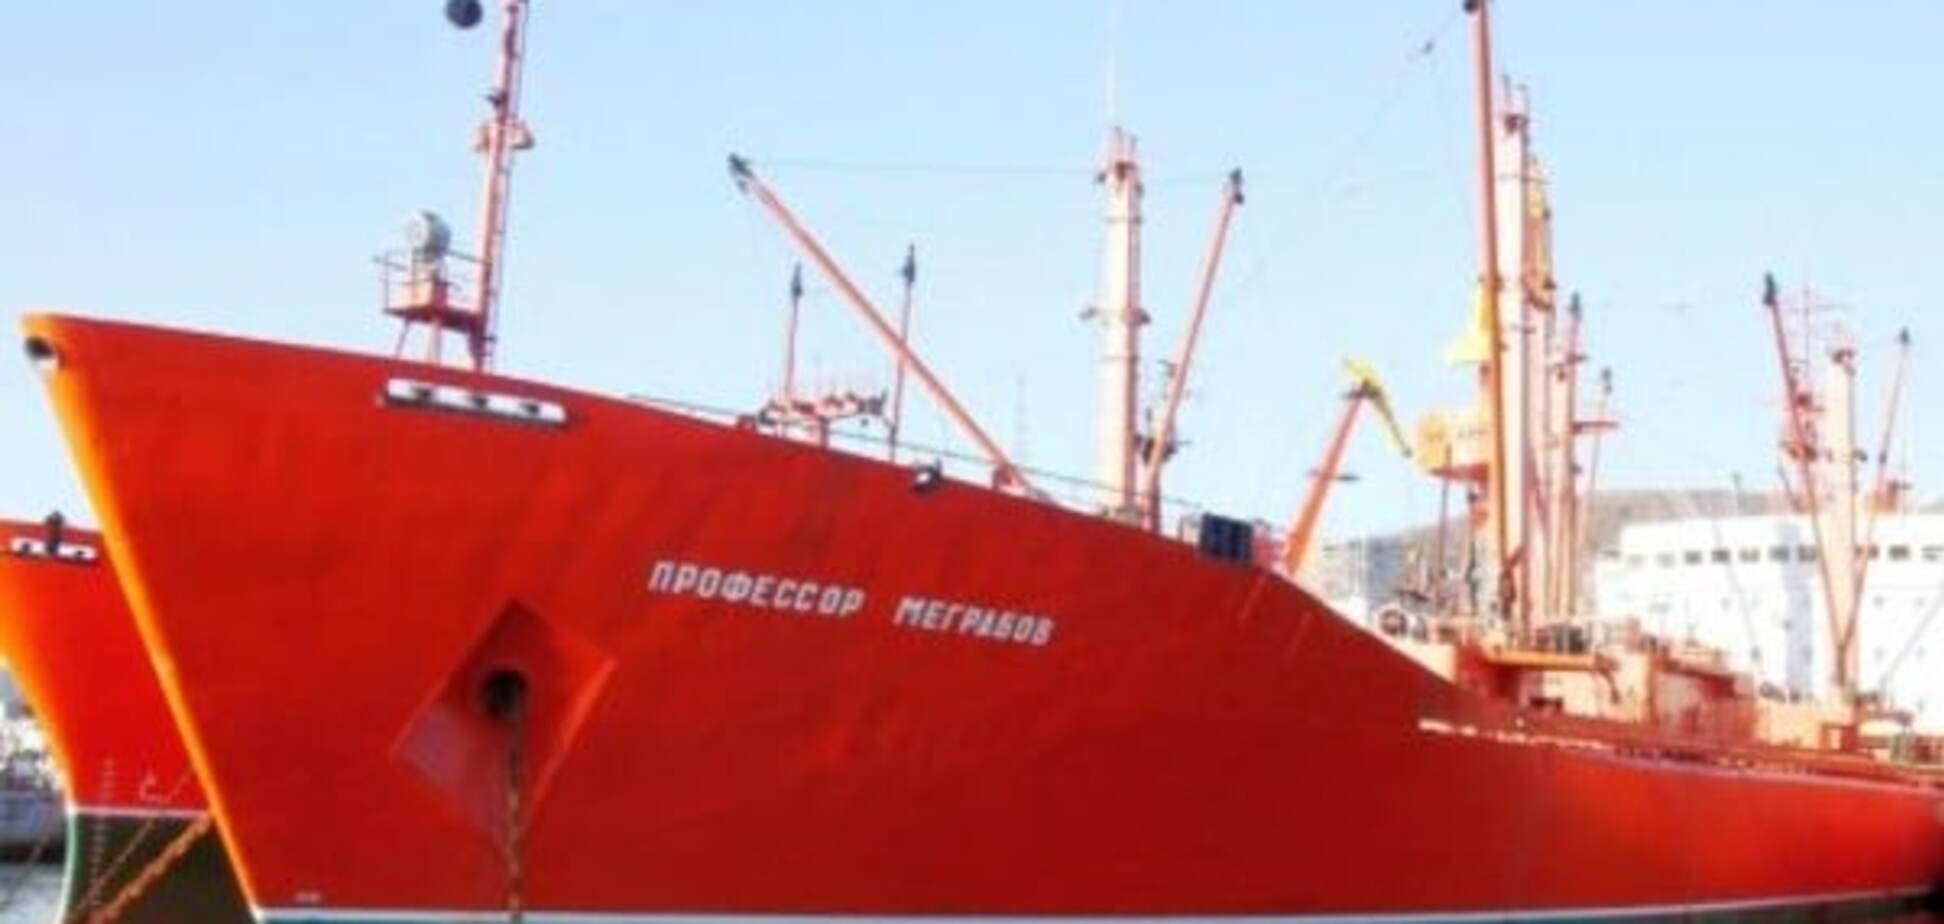 Без света и с трупом: в Китае арестовали российский корабль